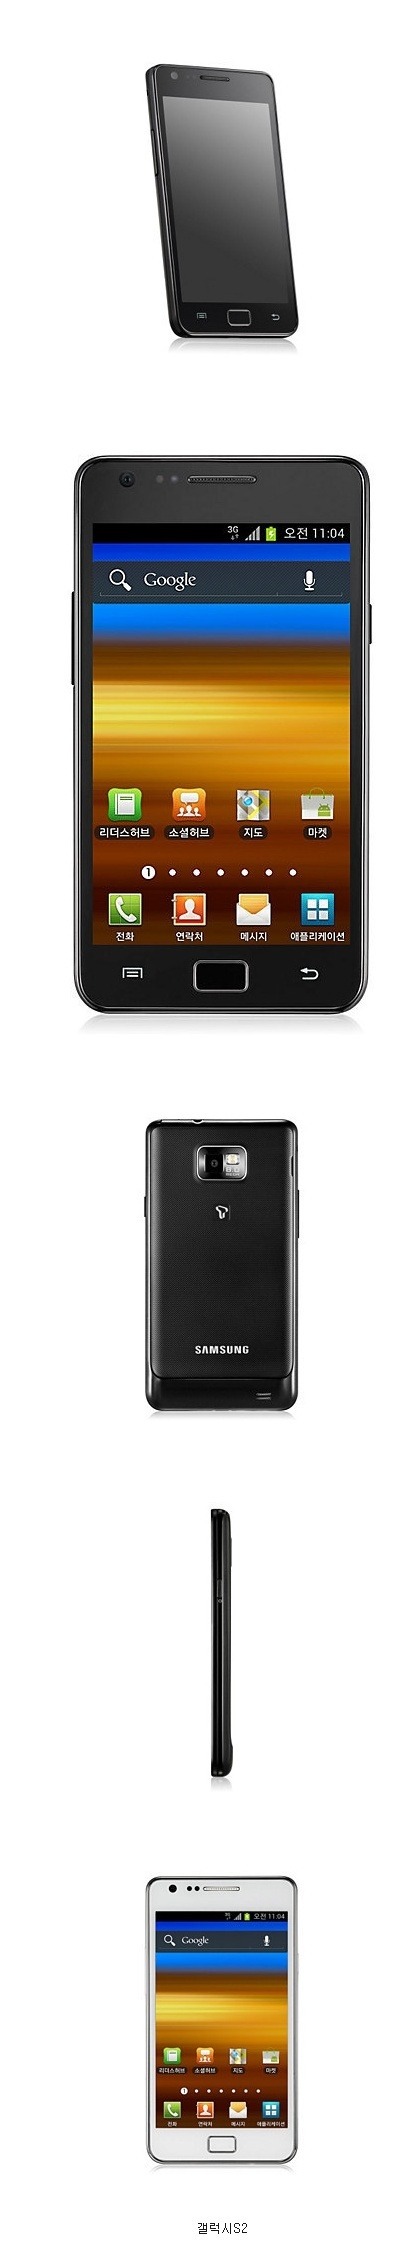 삼성에서 가장 잘 만든 휴대폰